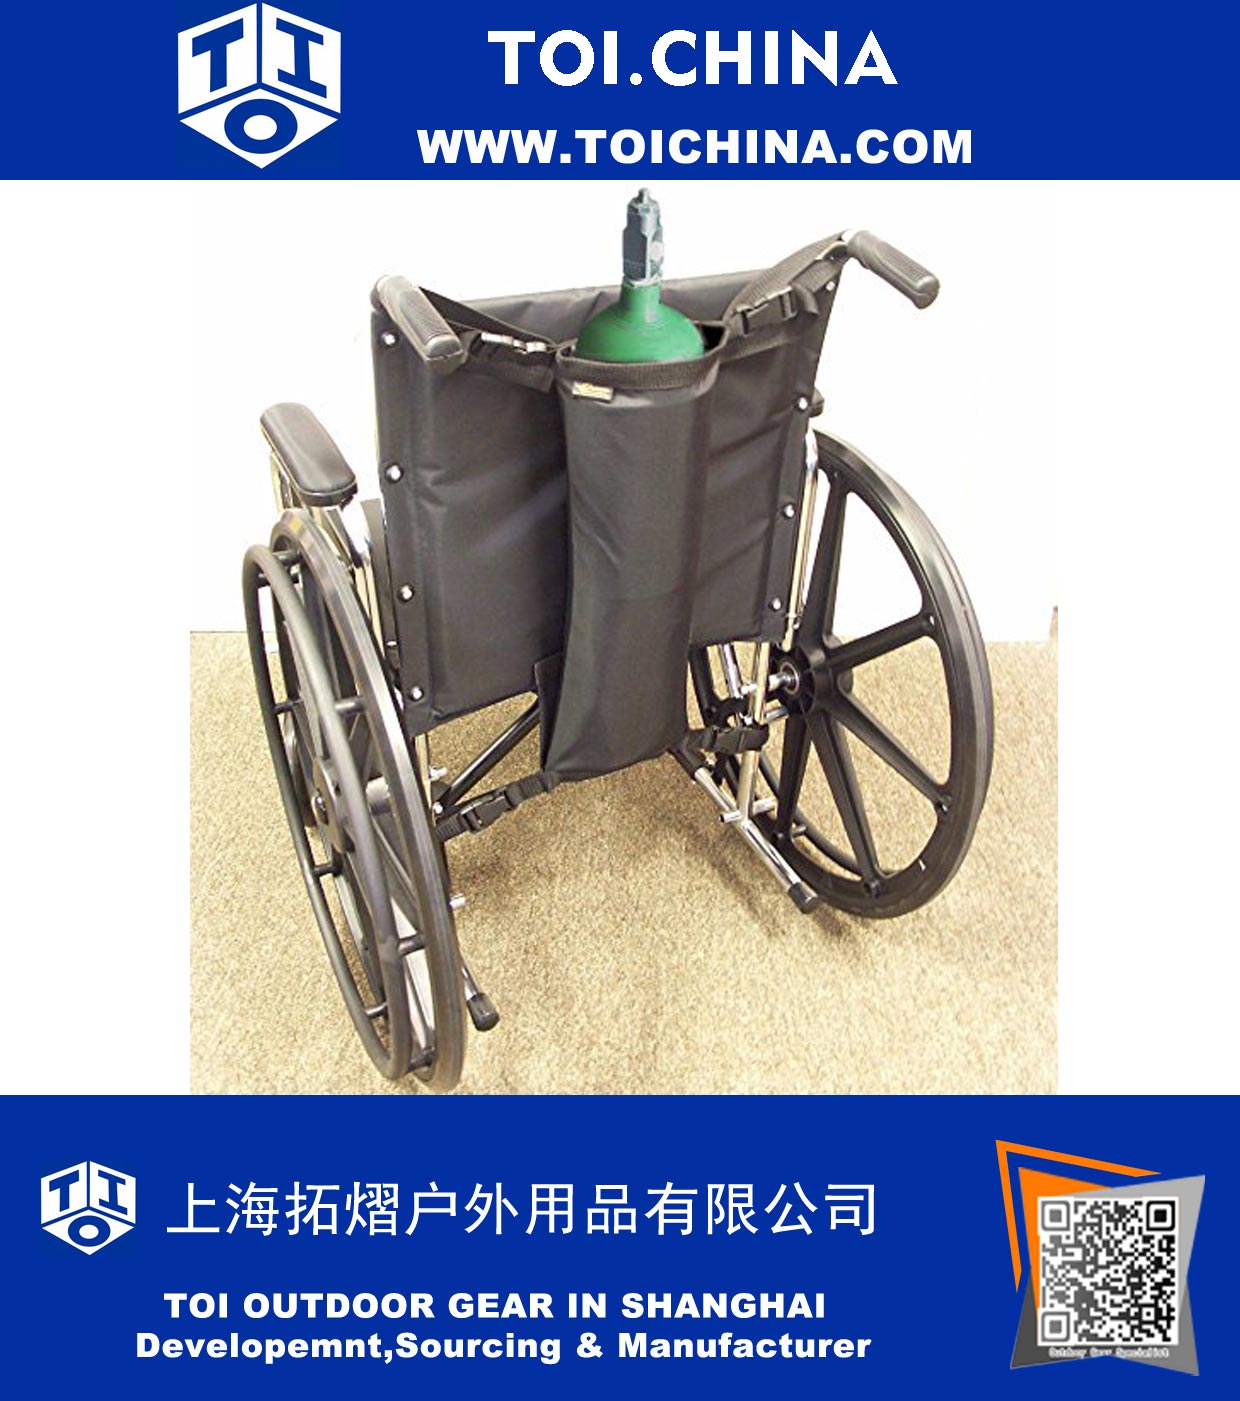 Одноместный кислородный мешок для инвалидного кресла